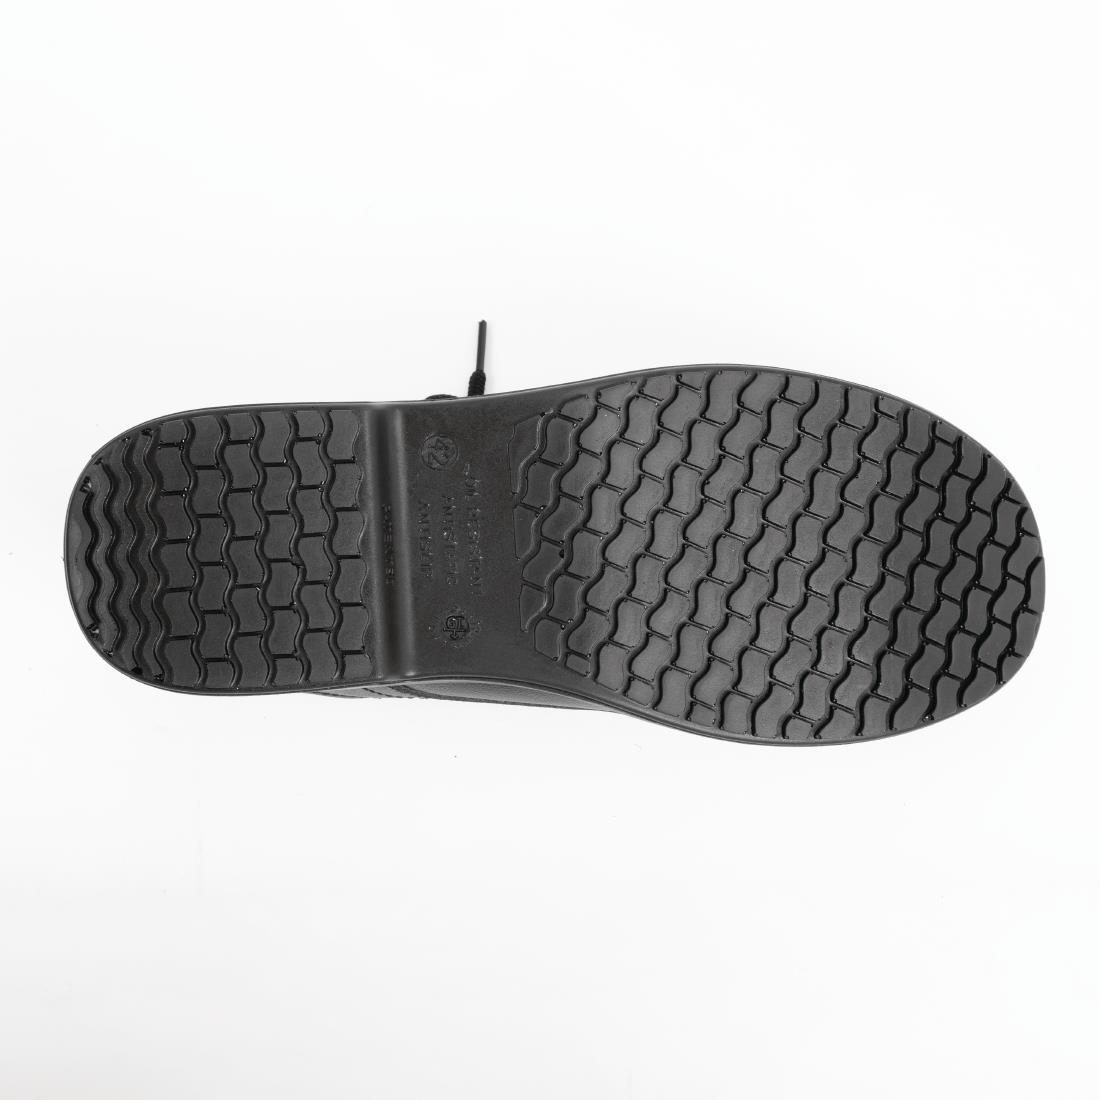 Slipbuster Basic Toe Cap Safety Shoes Black 38 - BB497-38  - 2